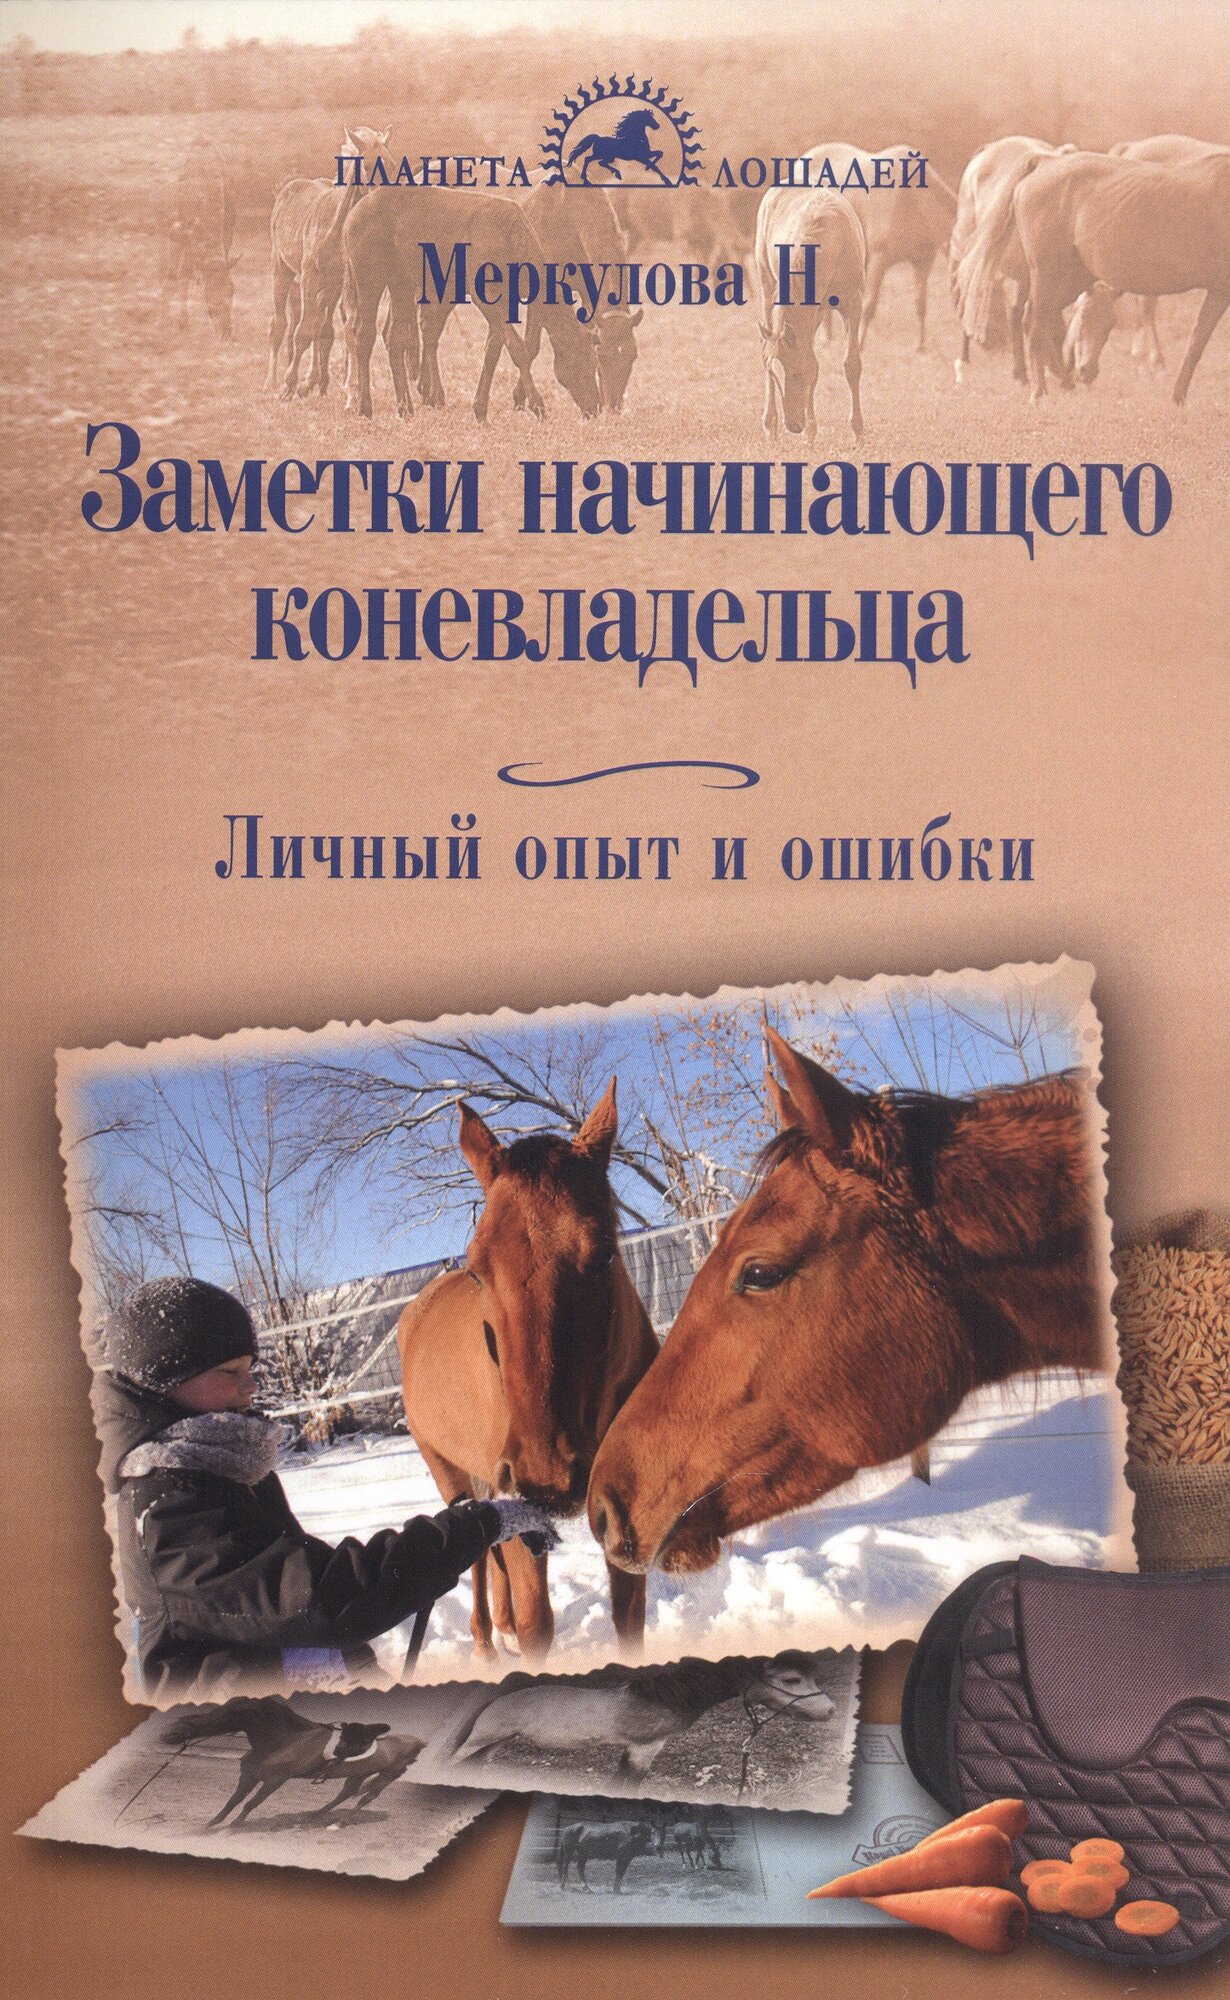 Меркулова Н. Ю. "Заметки начинающего коневладельца. Личный опыт и ошибки"